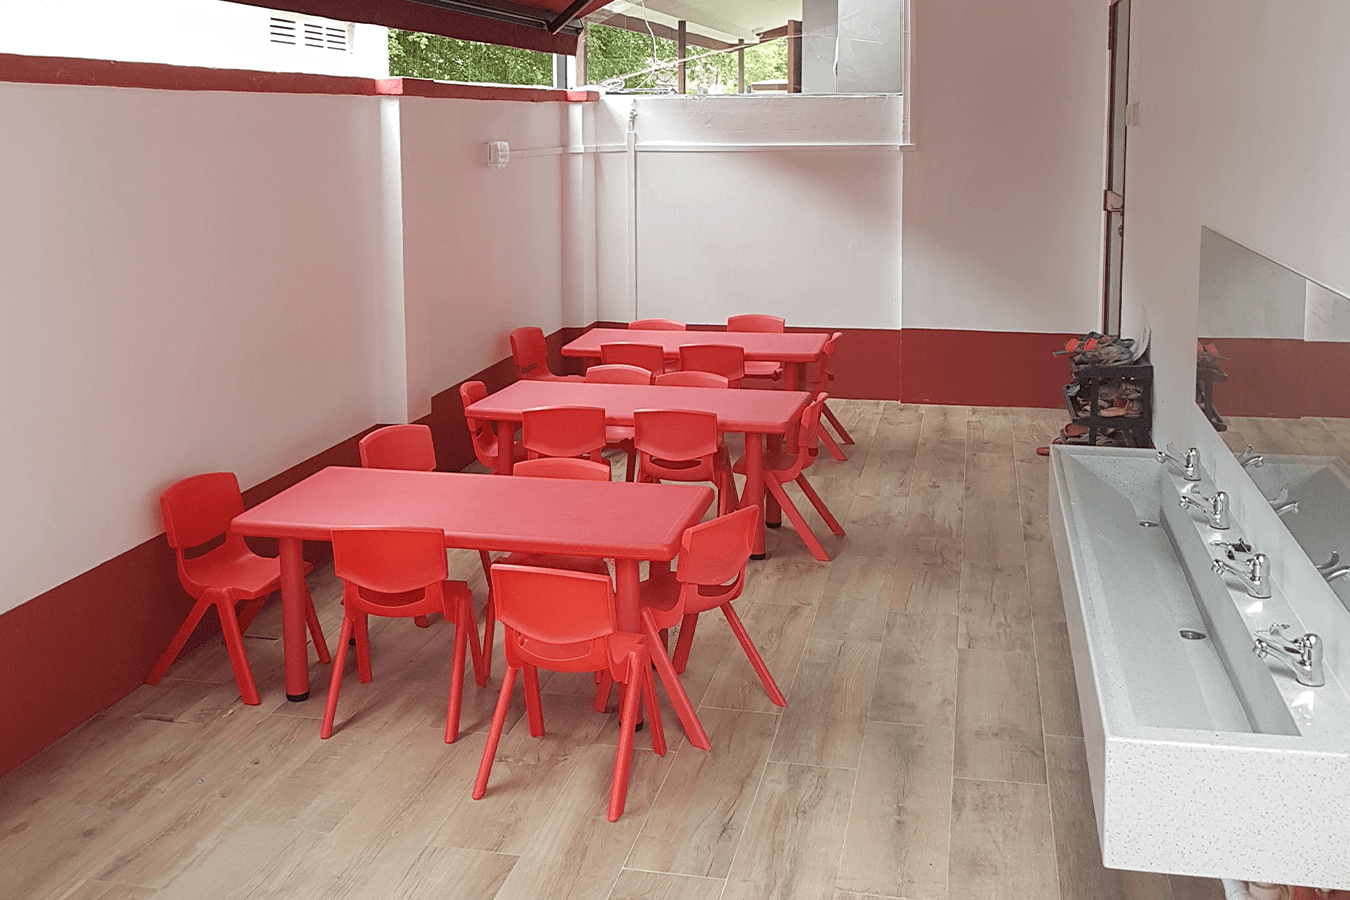 Raffles Kidz @ Bukit Panjang | Preschool Singapore | Child Care Outdoor Dining